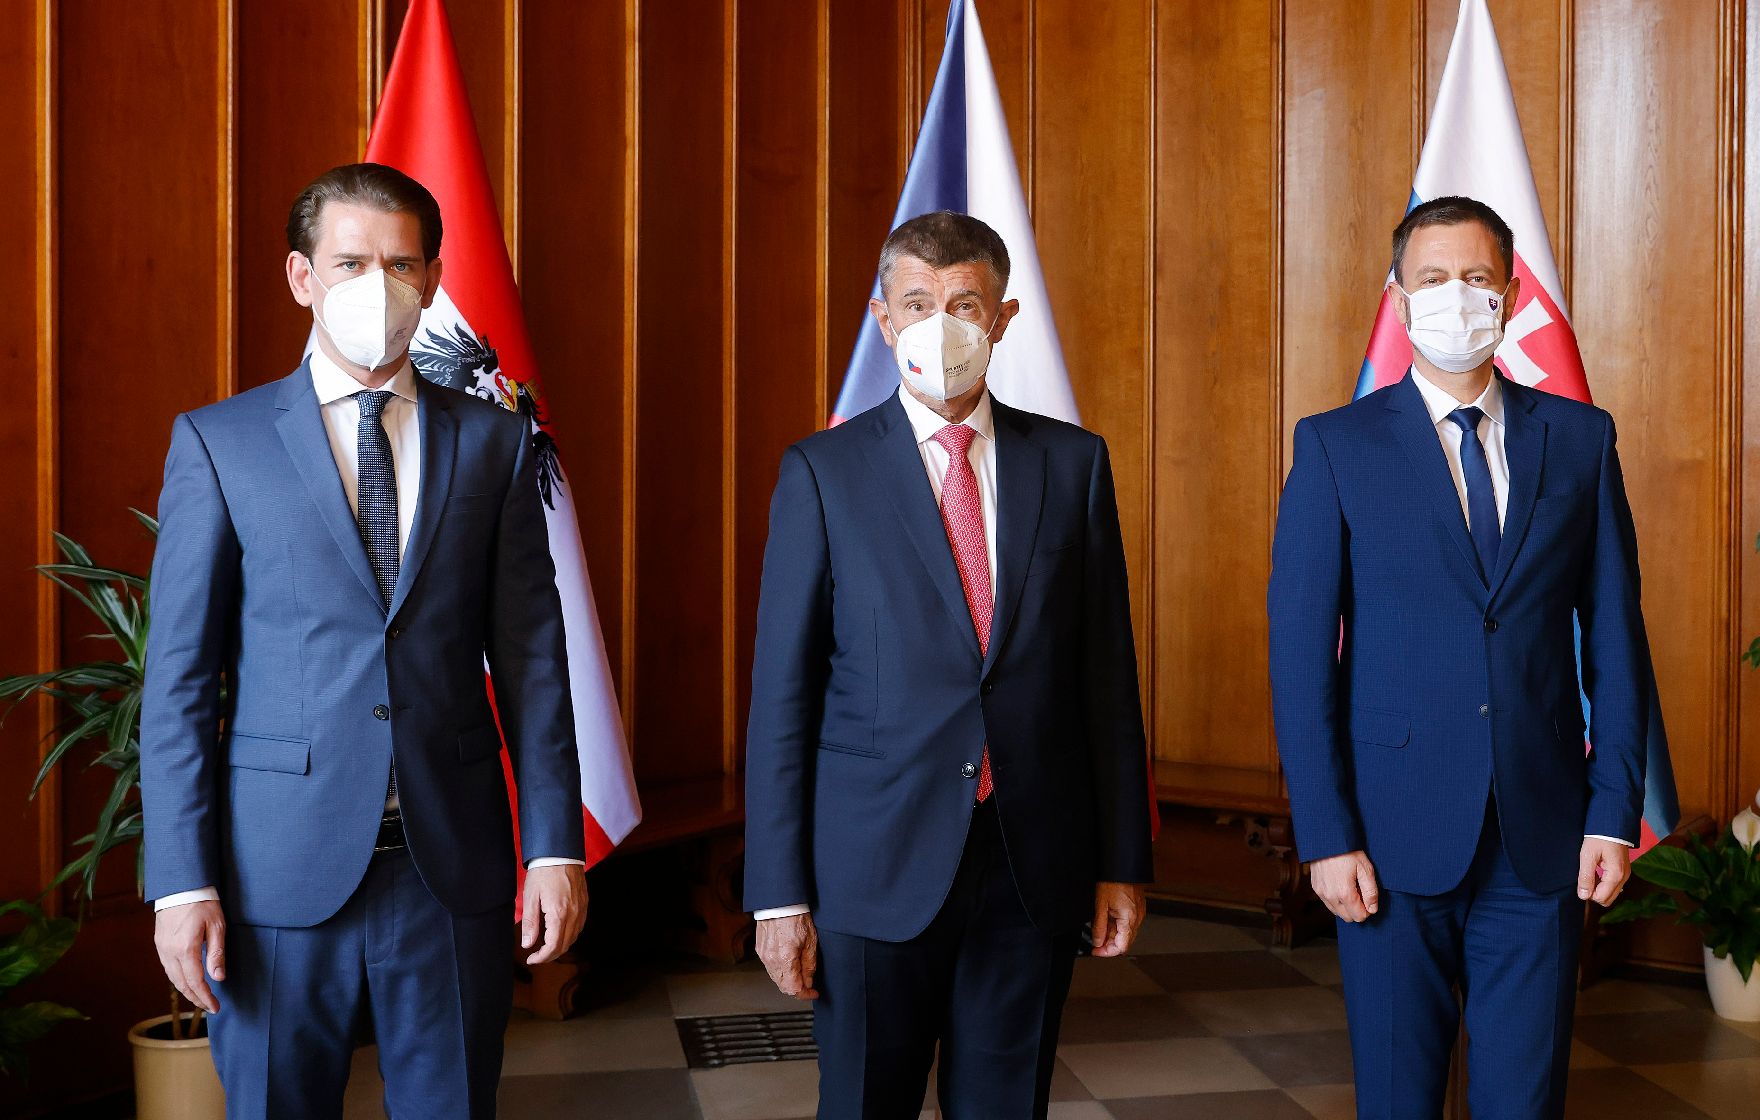 Am 7. September 2021 fand das „SLAVKOV-3 Treffen“ in Tschechien statt. Im Bild Bundeskanzler Sebastian Kurz (l.), der tschechische Ministerpräsident Andrej Babiš (m.) und der slowakische Ministerpräsident Igor Matoviè (r.).